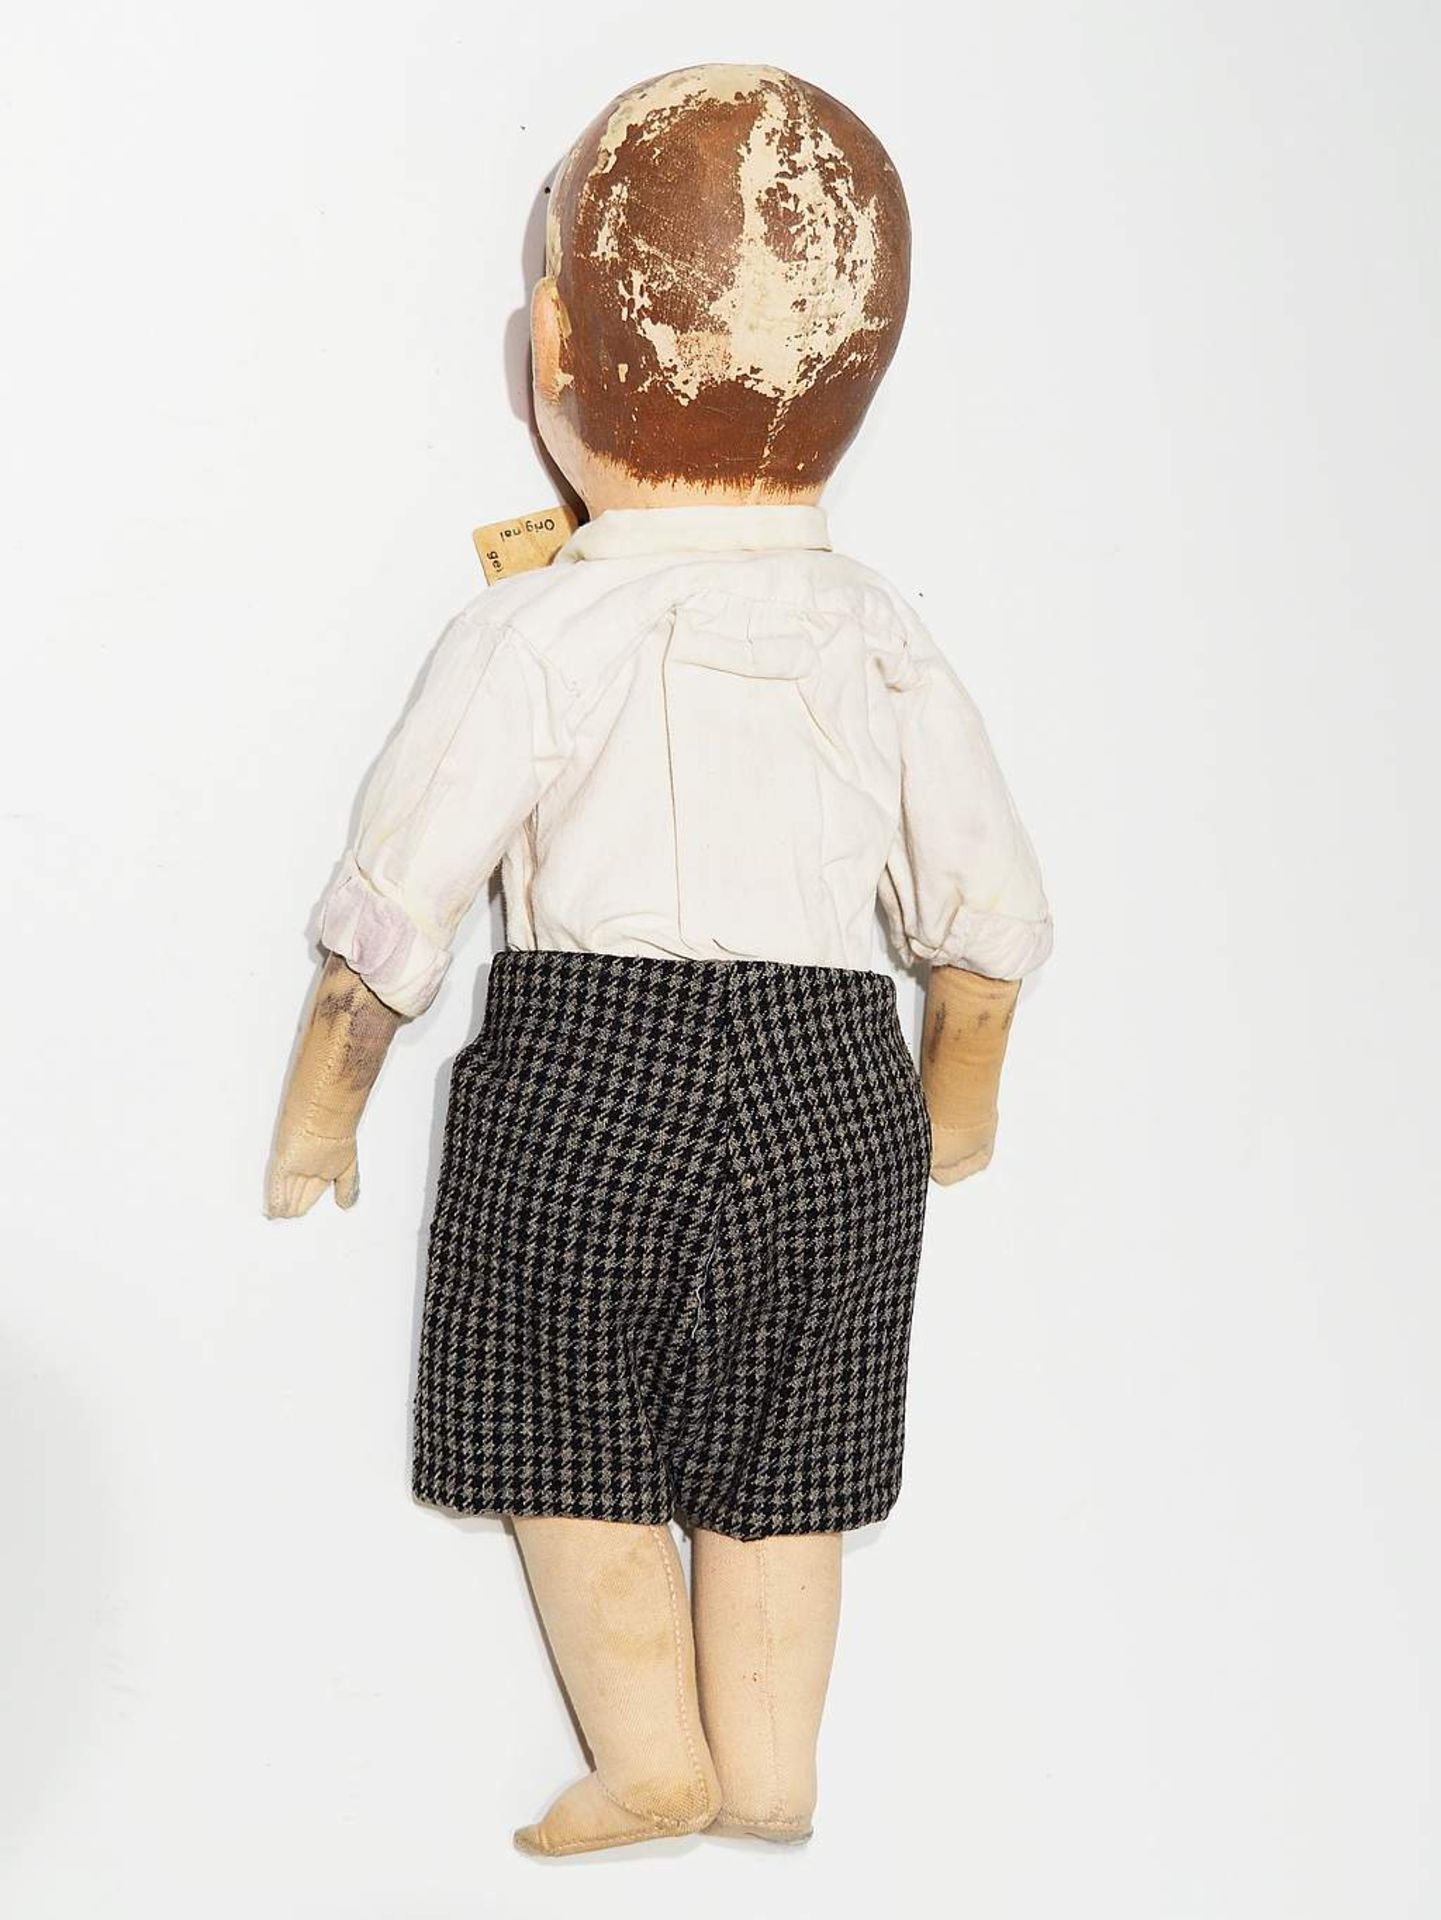 Antike Käthe Kruse Puppe mit original Etikett, wohl um 1920/30. - Bild 3 aus 5